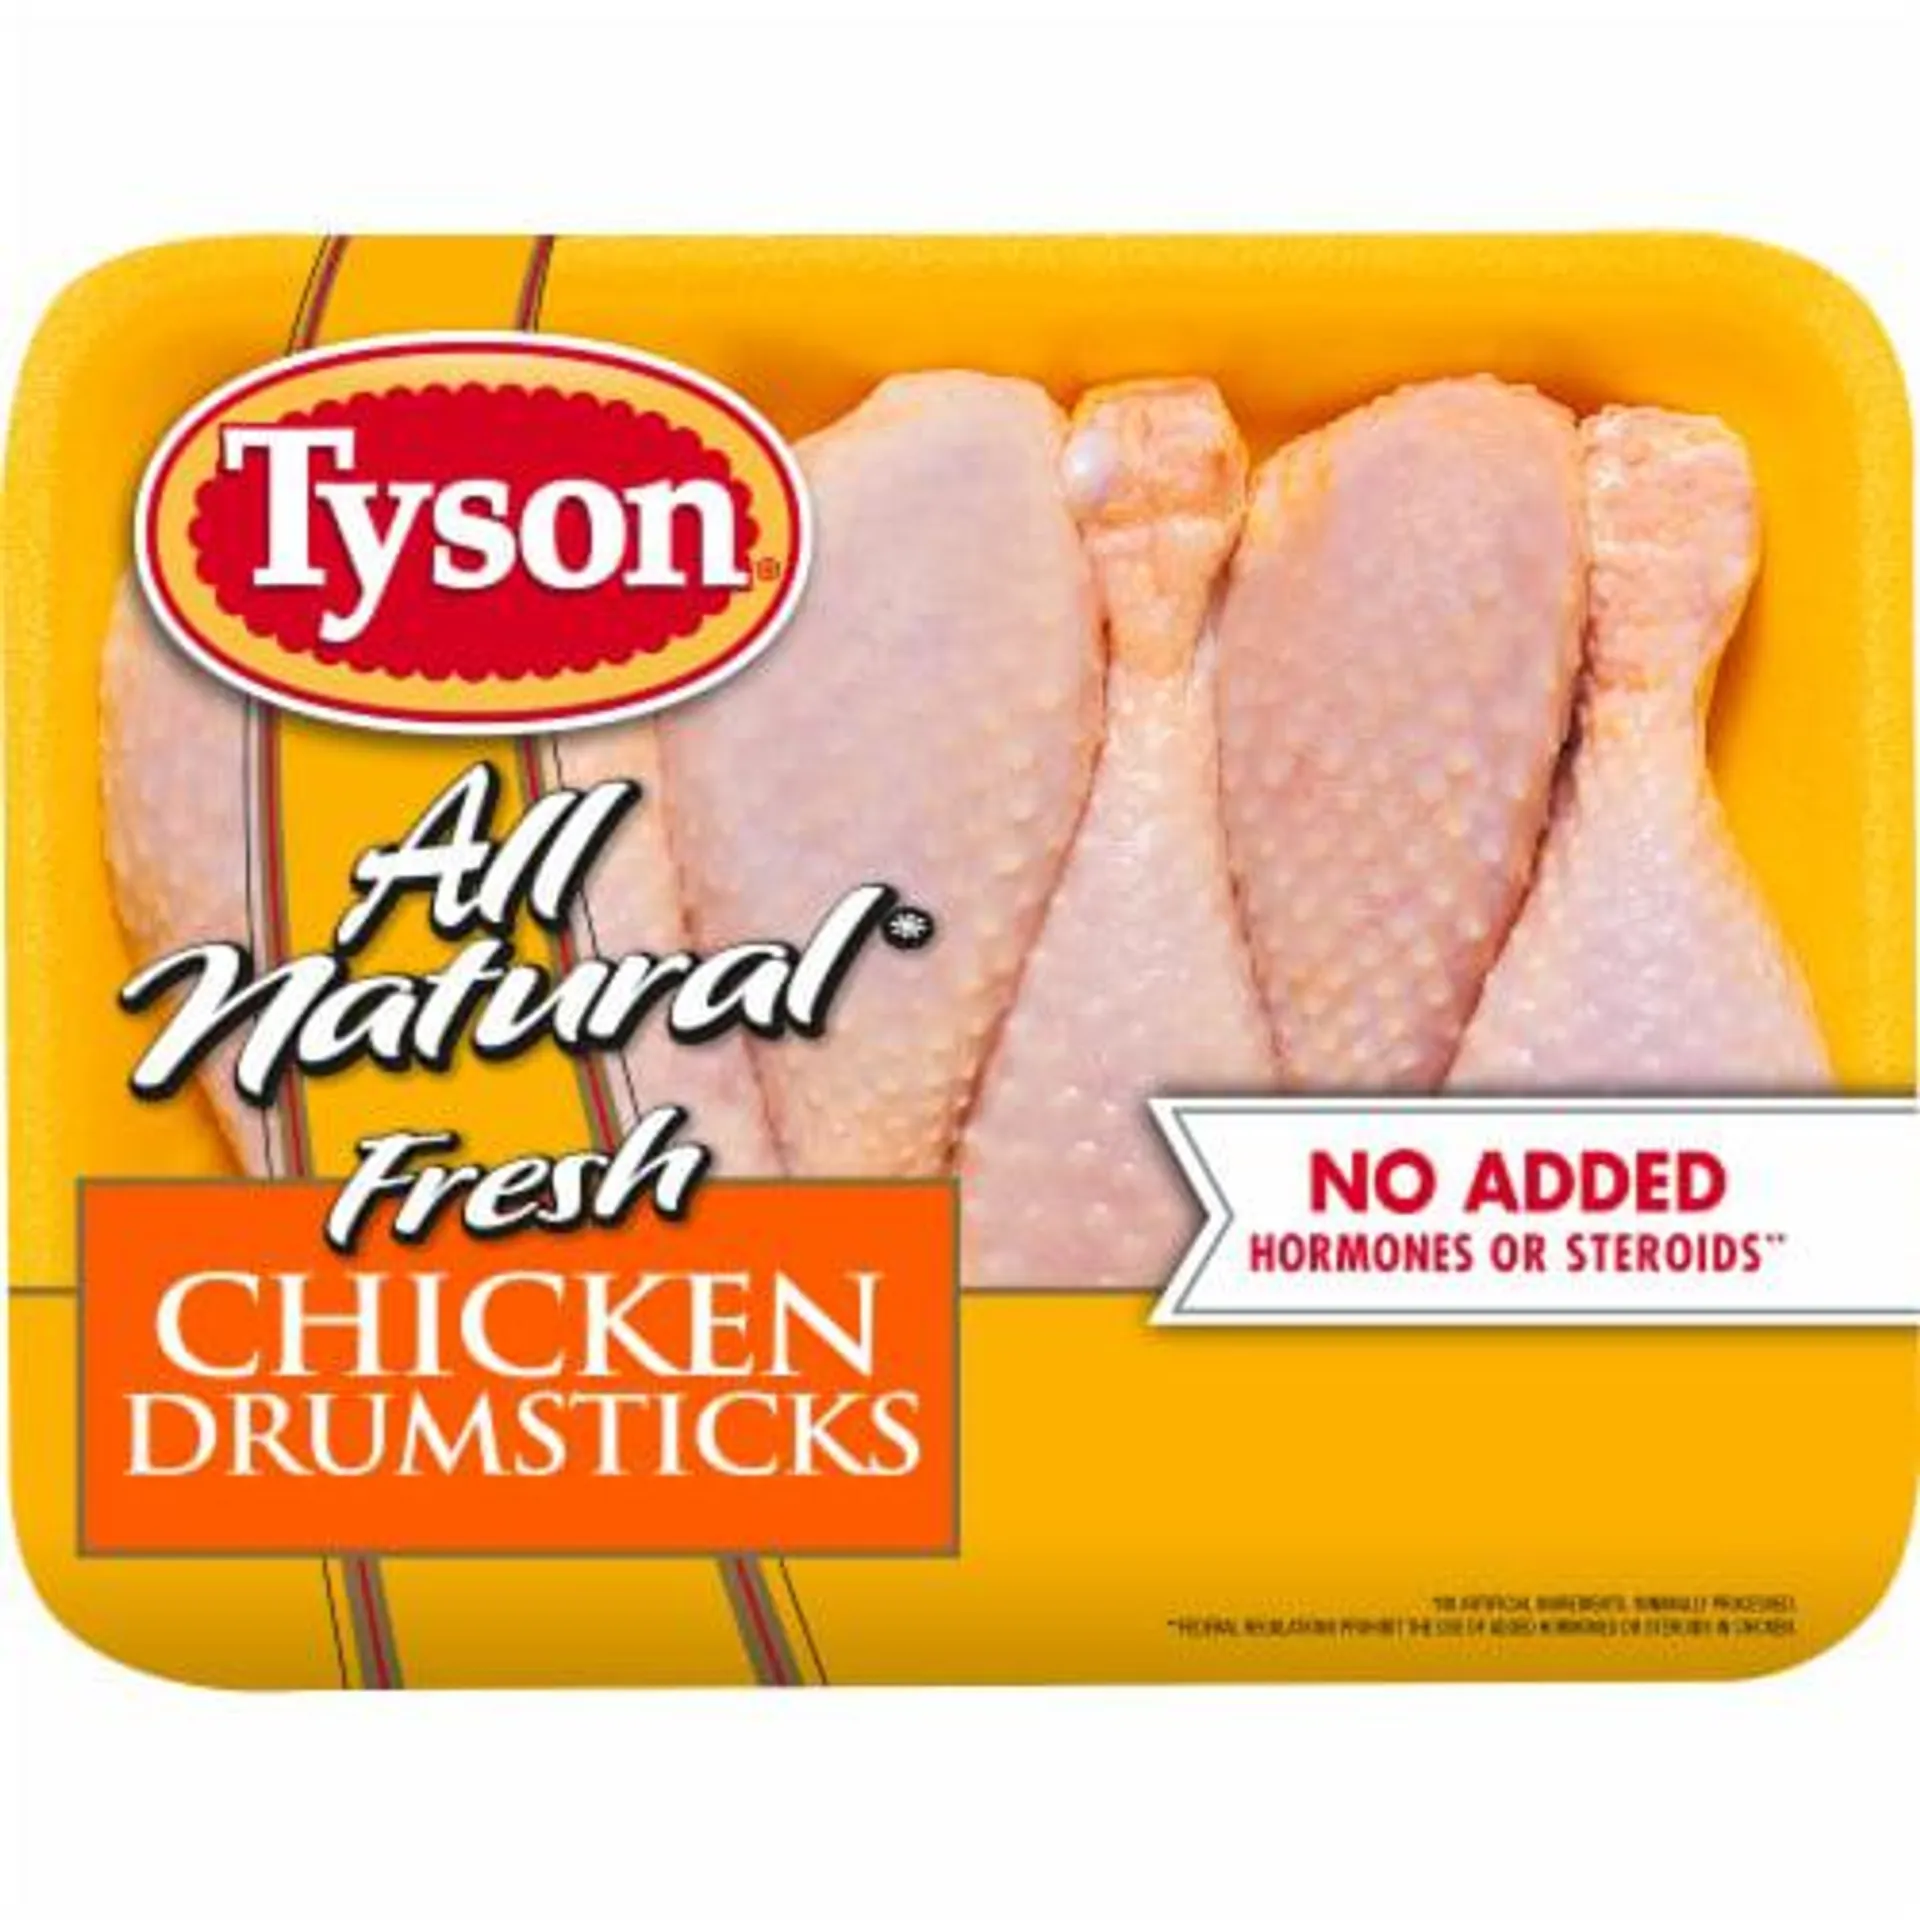 Tyson All Natural Fresh Chicken Drumsticks